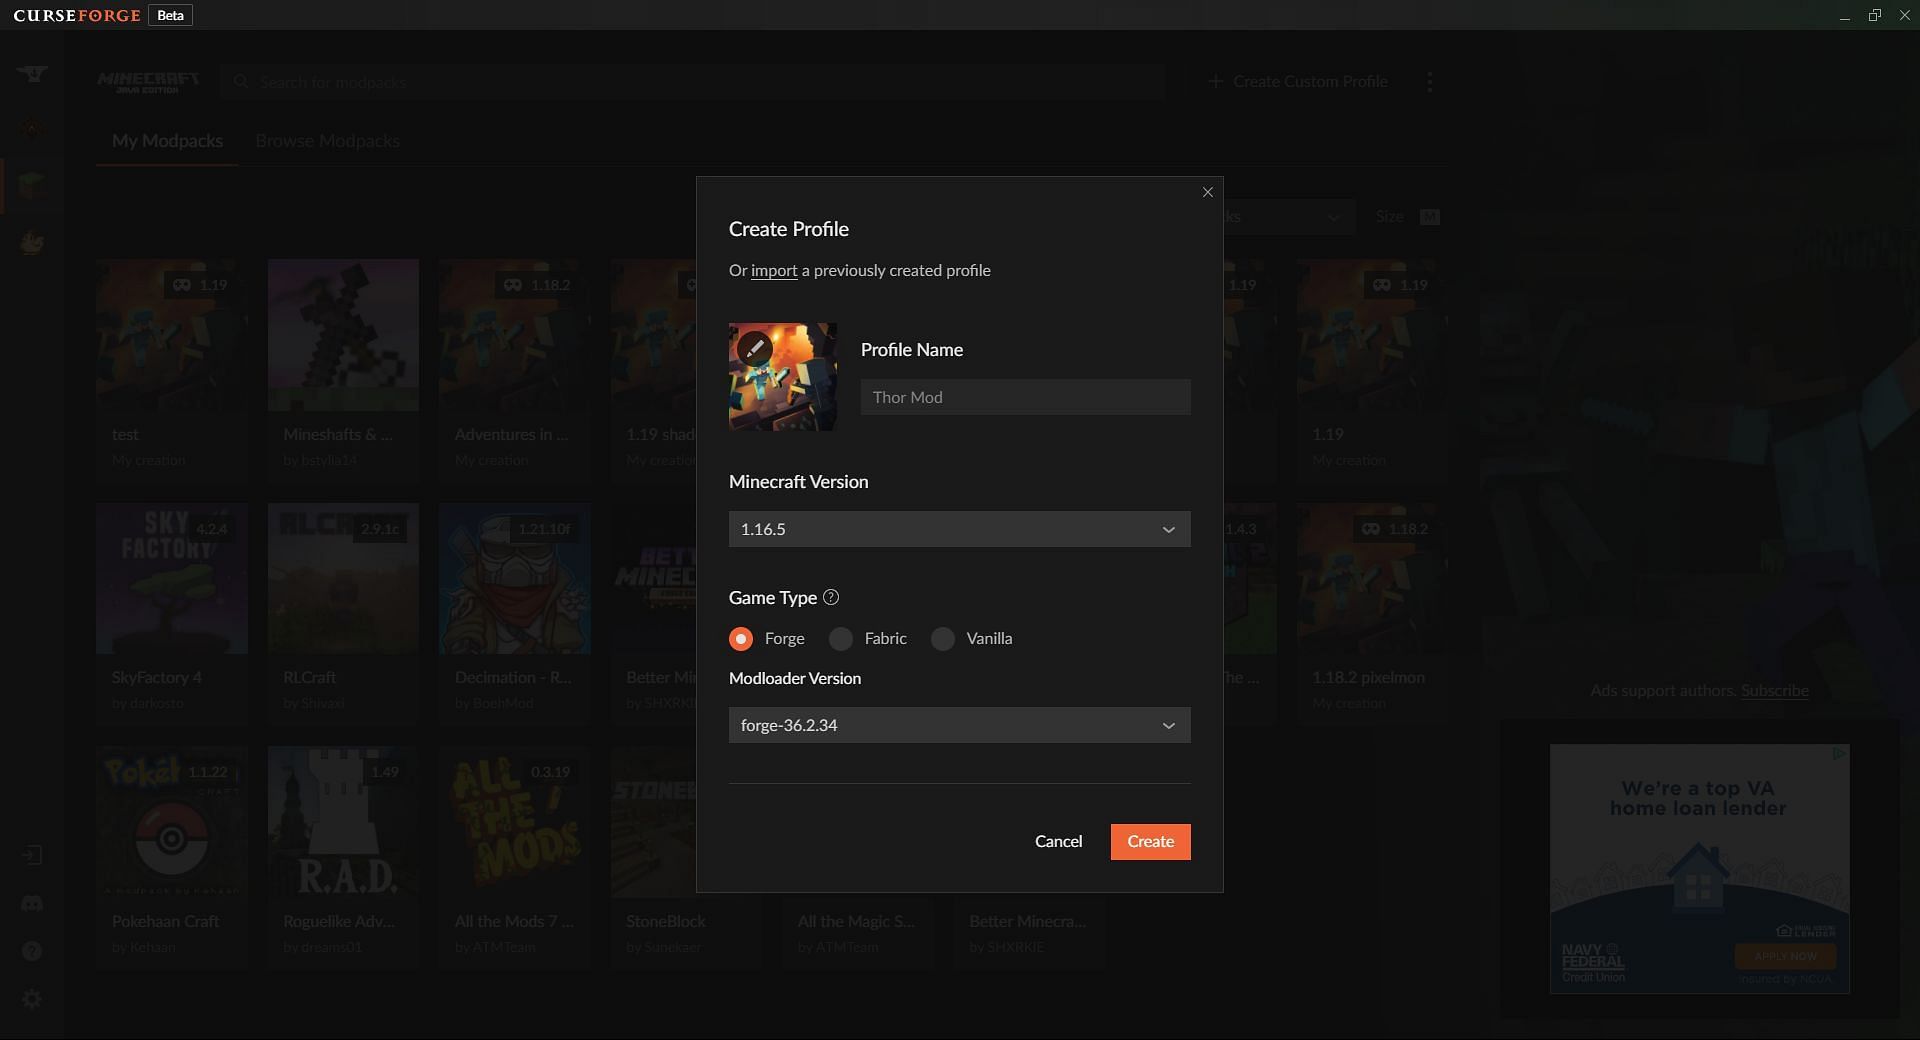 The CurseForge custom profile creation window (Image via CurseForge)